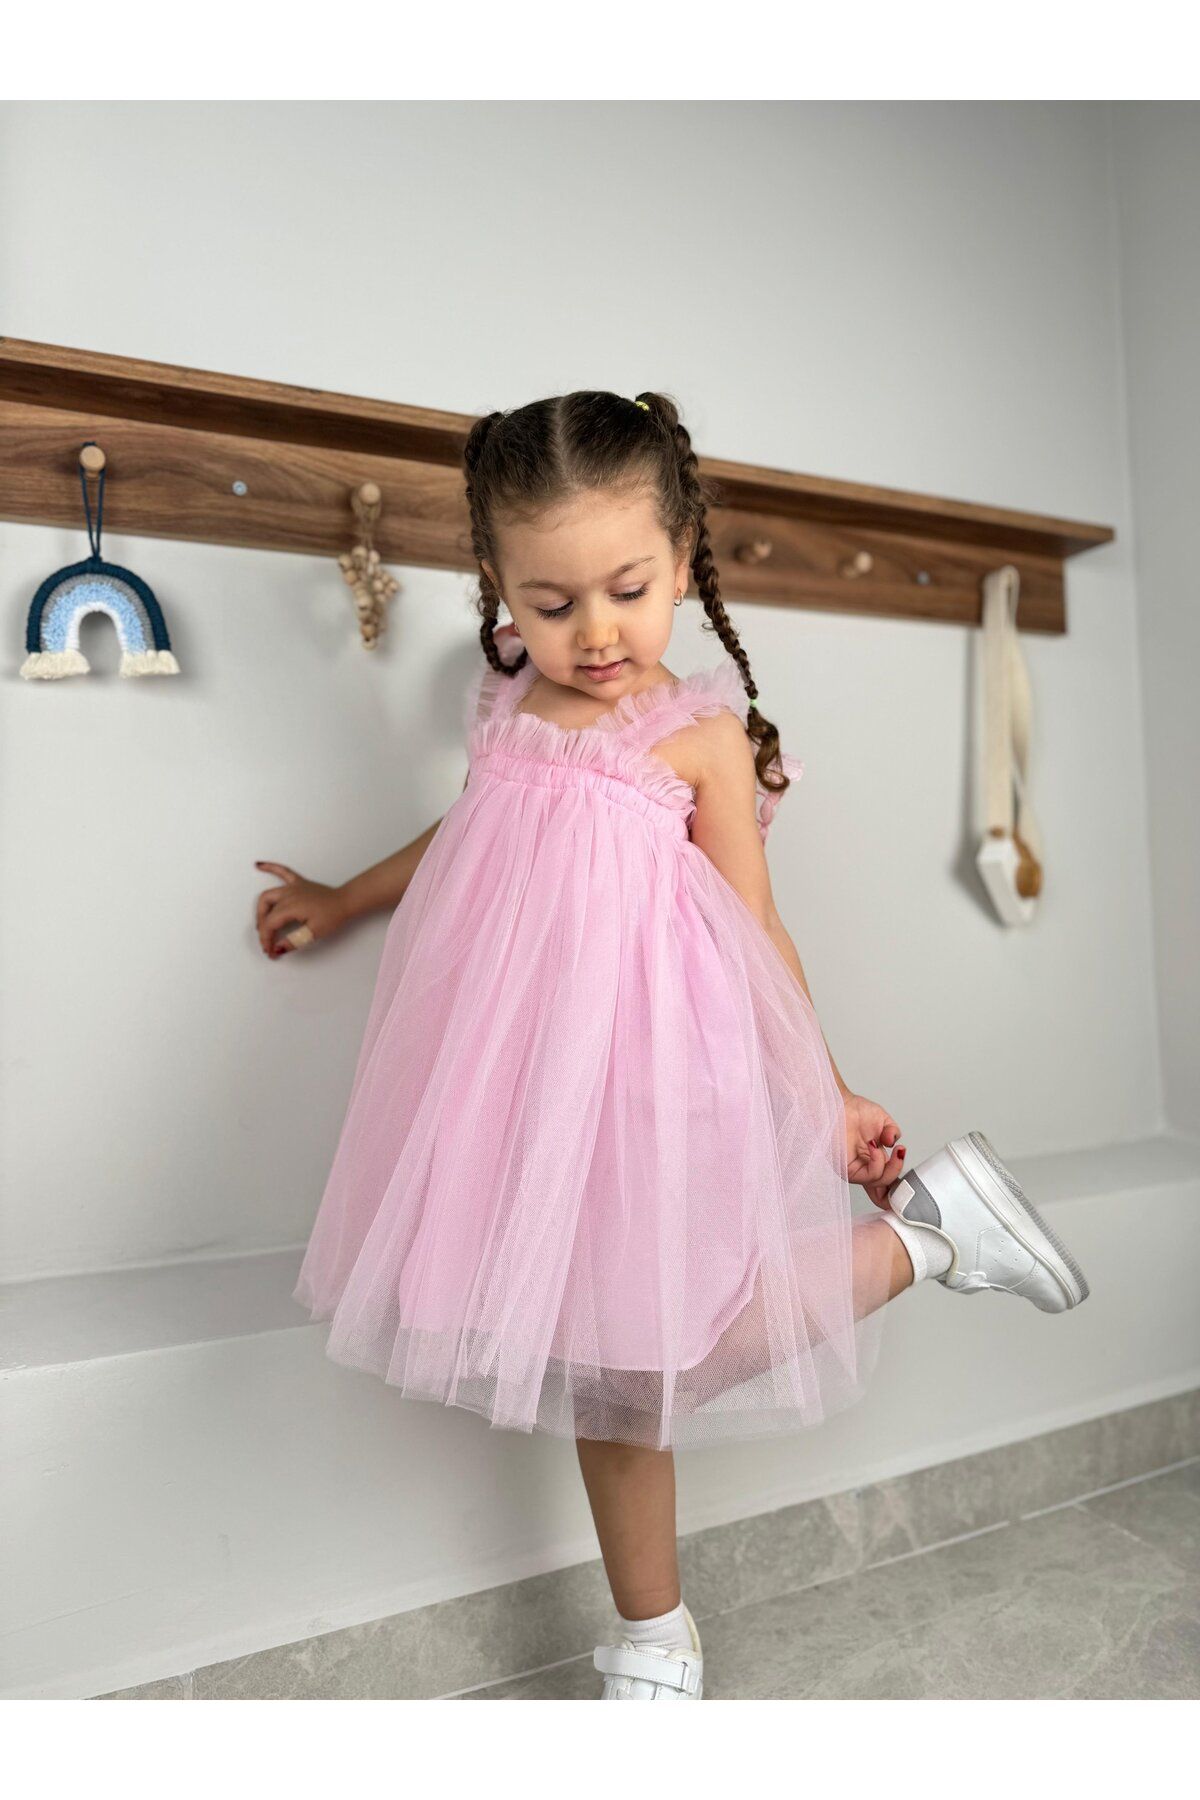 Minizade Yazlık Tütülü Astarlı Bebek Elbise Çocuk Elbise Kız Çocuk Doğum Günü Parti Düğün Elbisesi